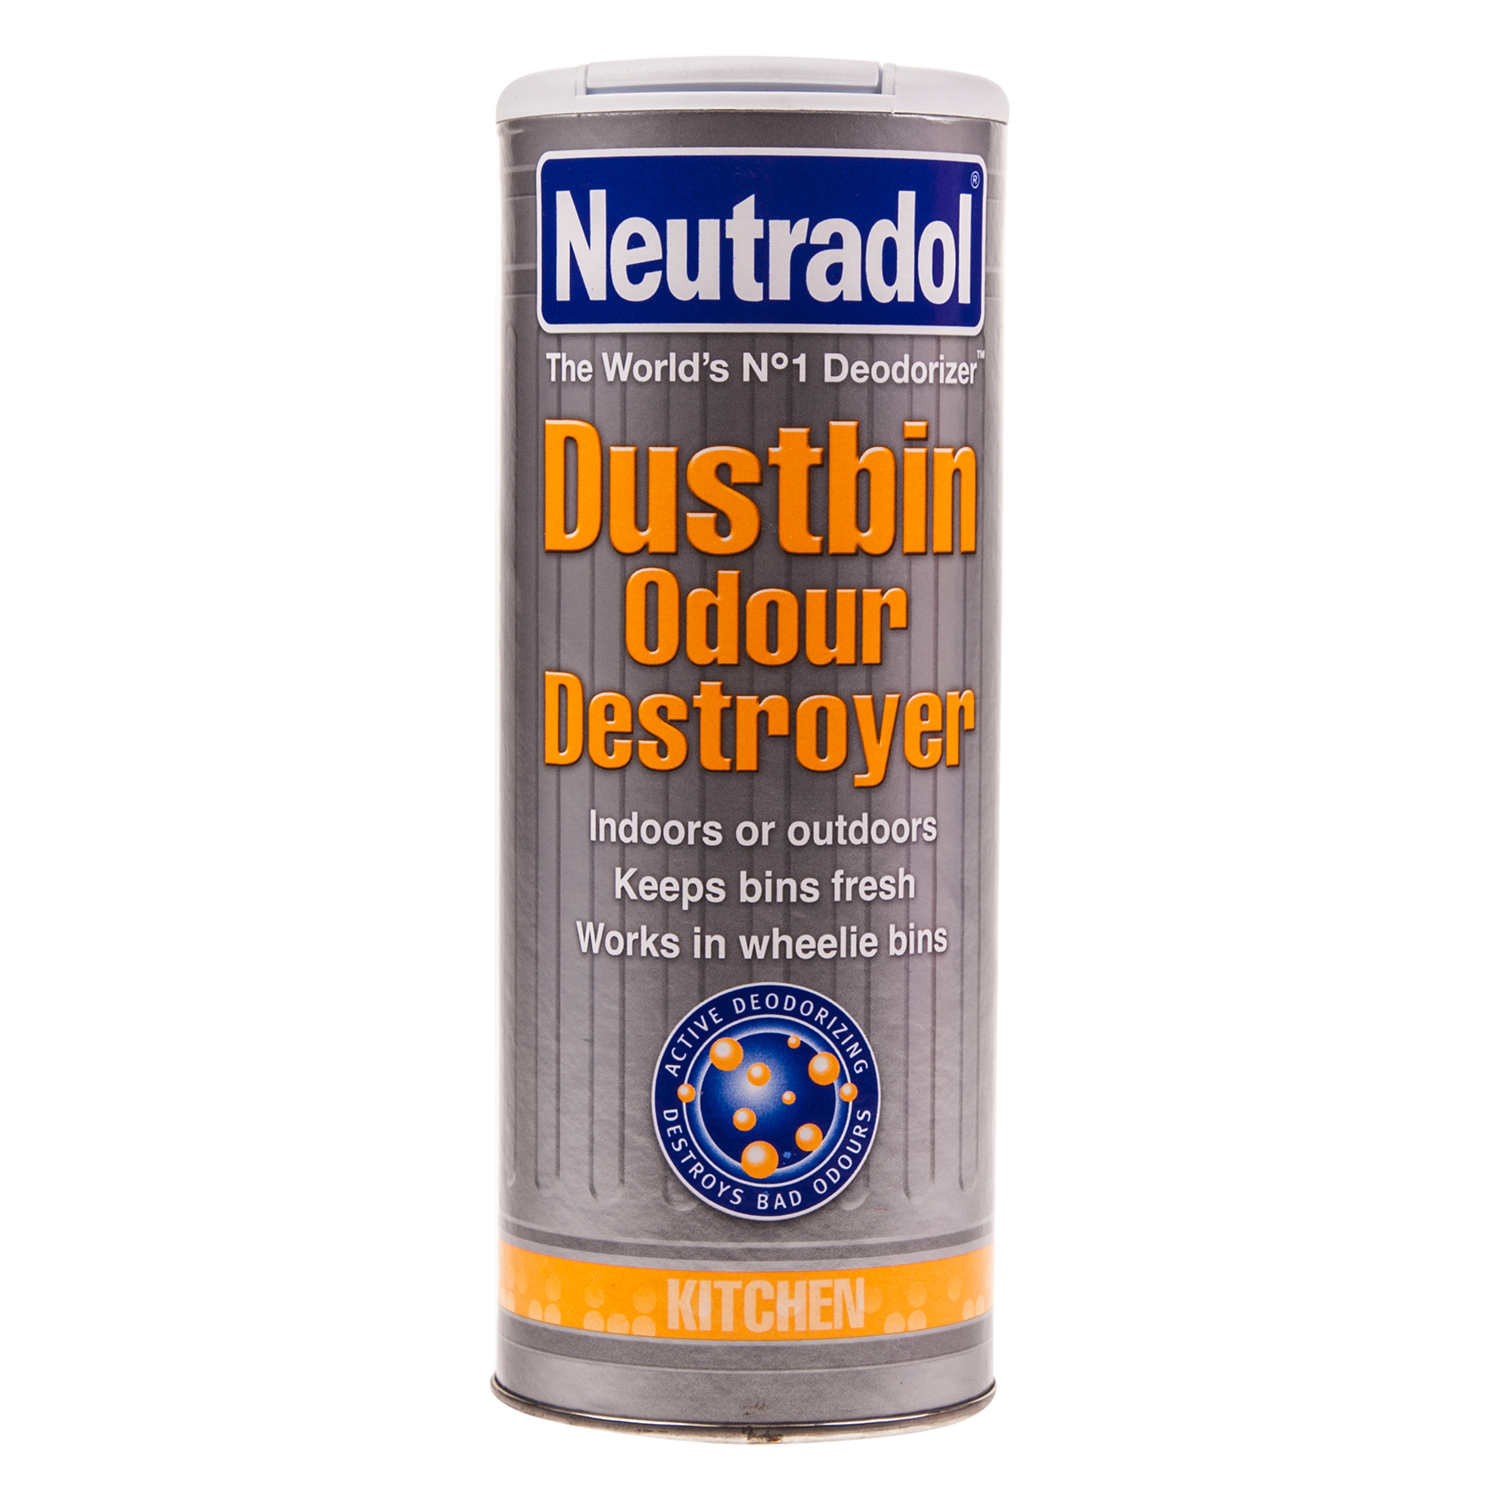 Neutradol Dustbin Odour Destroyer 350g Image